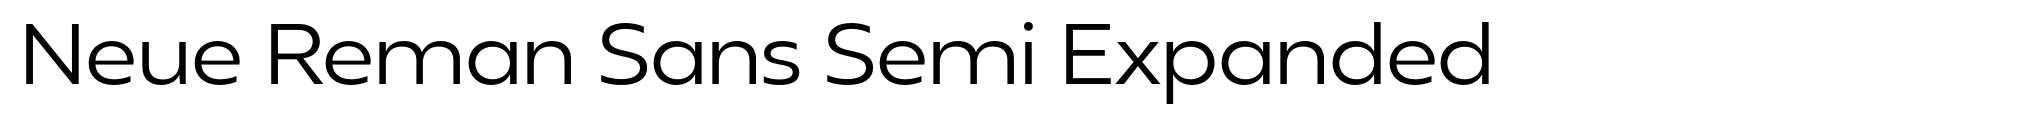 Neue Reman Sans Semi Expanded image